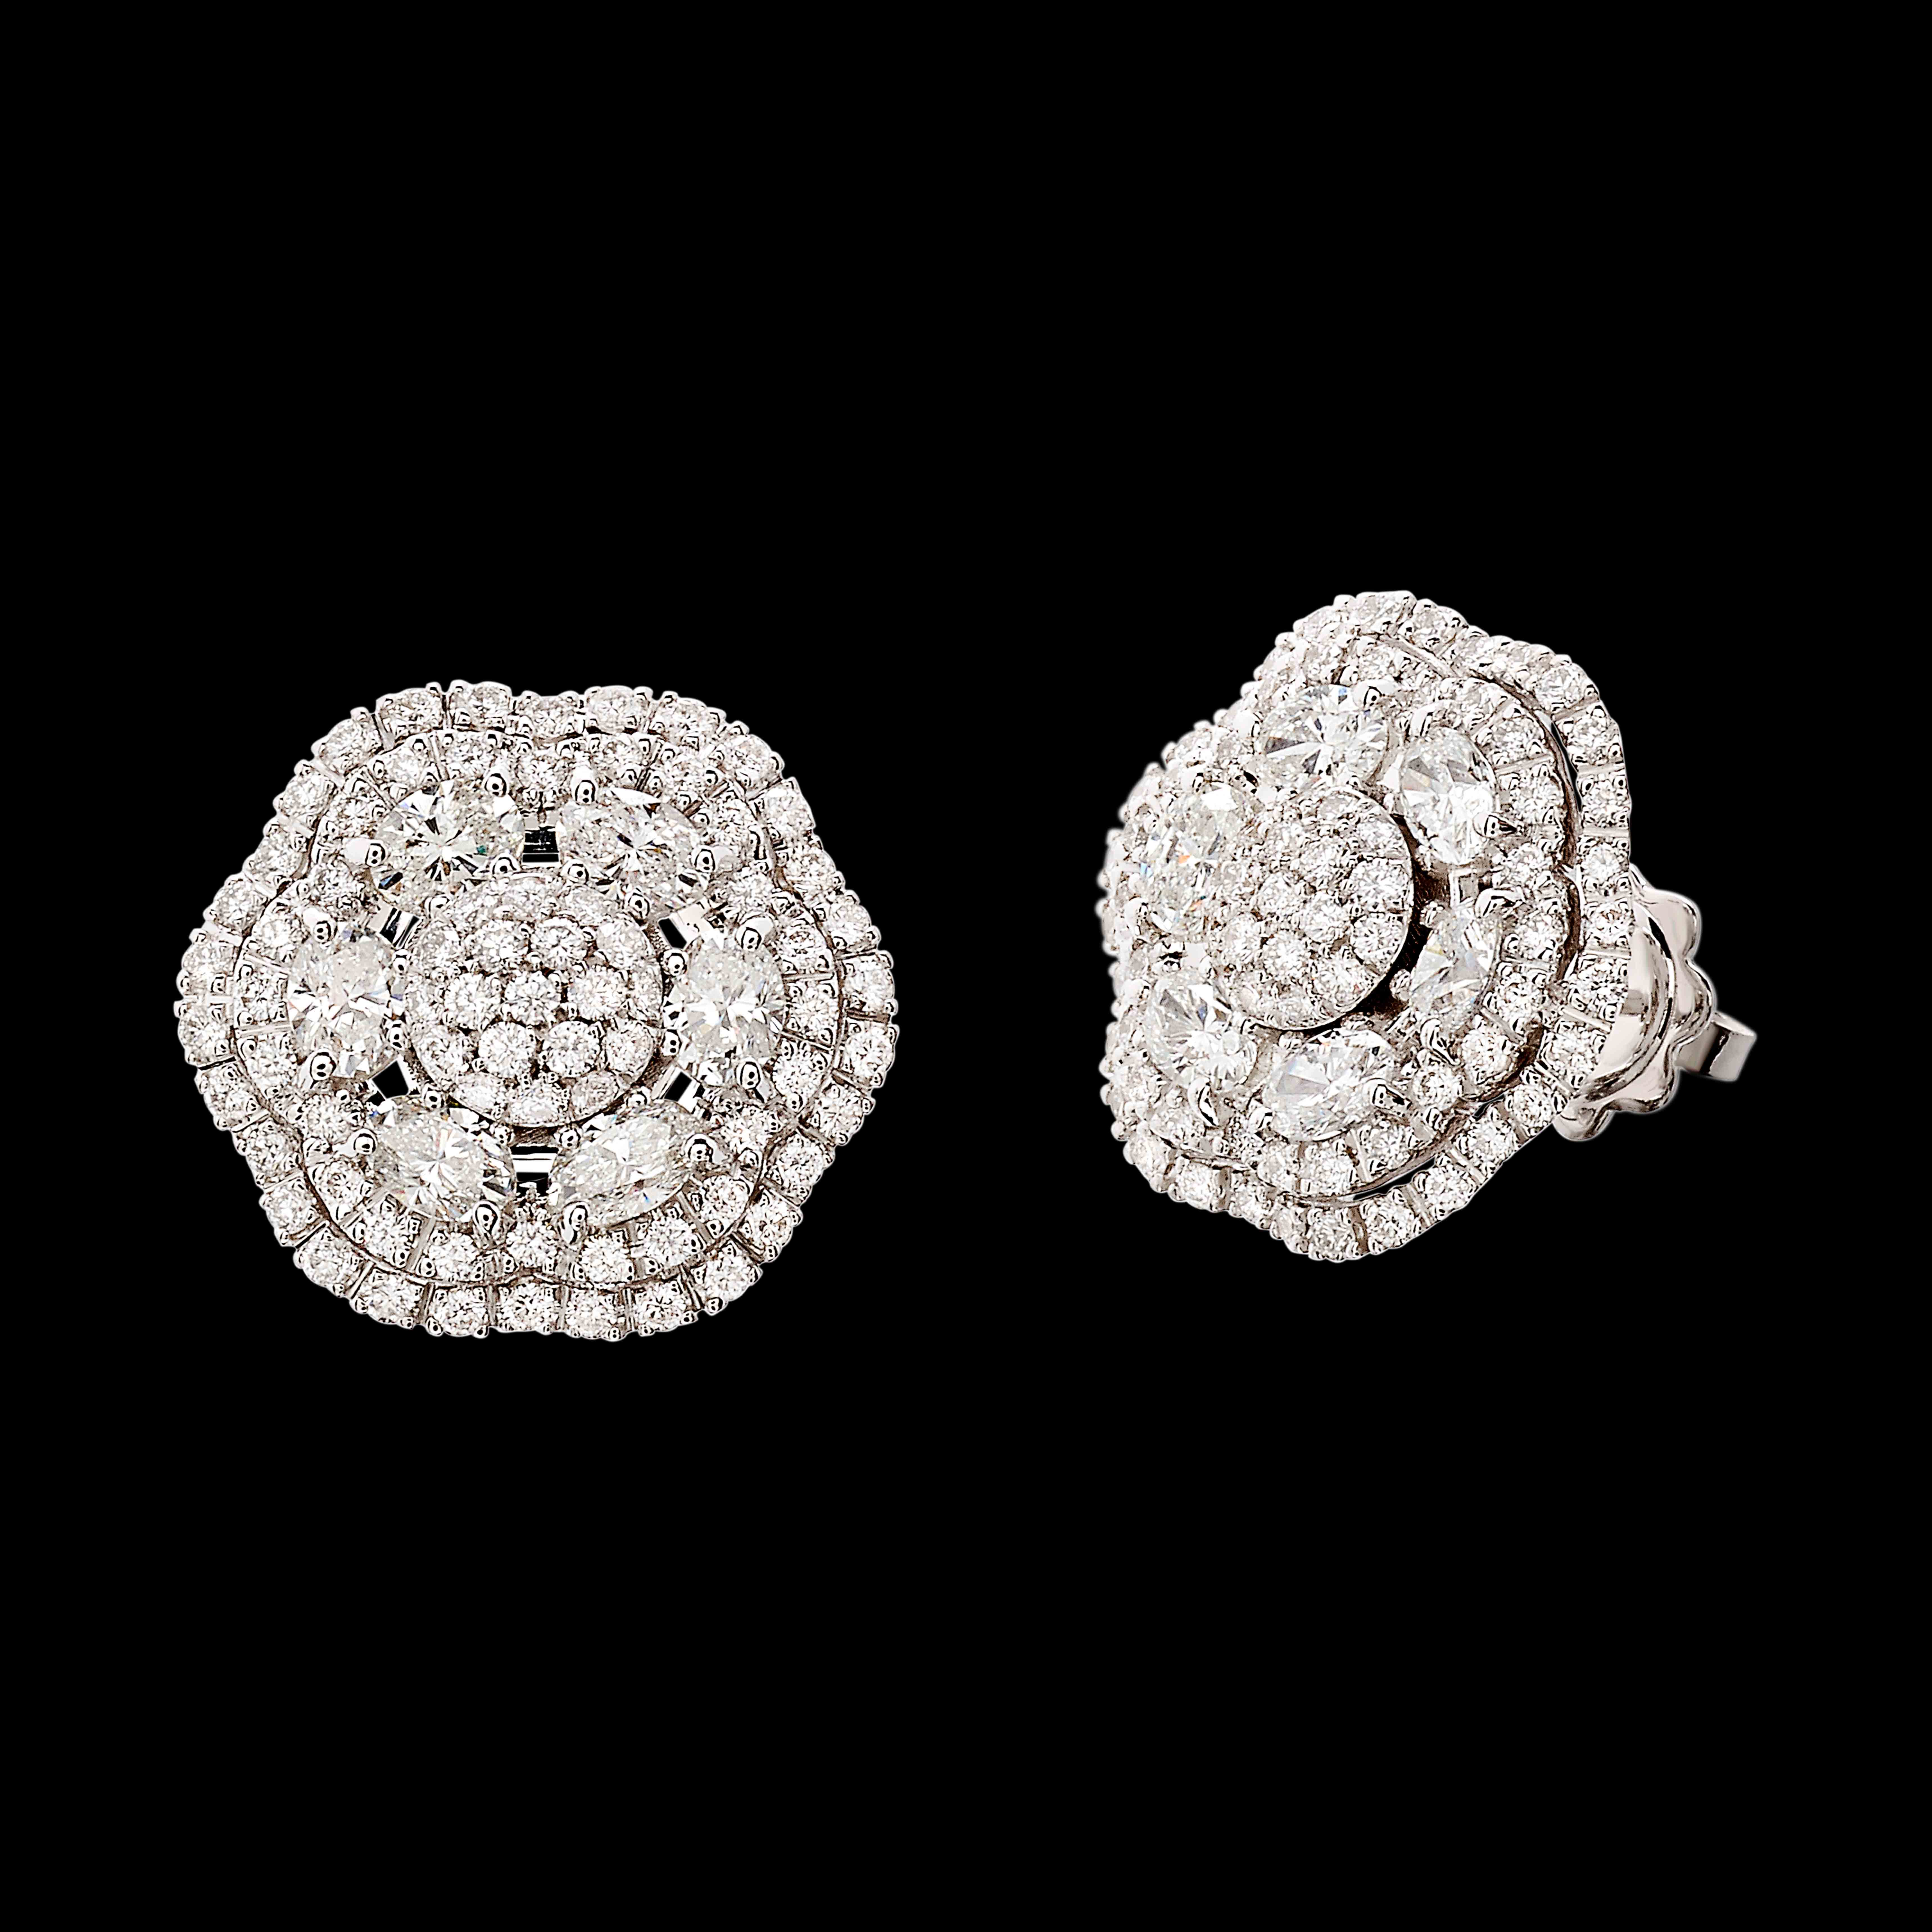 massimo raiteri exclusive jewellery earrings classic design  ruby gioielli orecchini ciondolo diamanti gioielleria rubini diamanti emerald smeraldi sapphire zaffiri